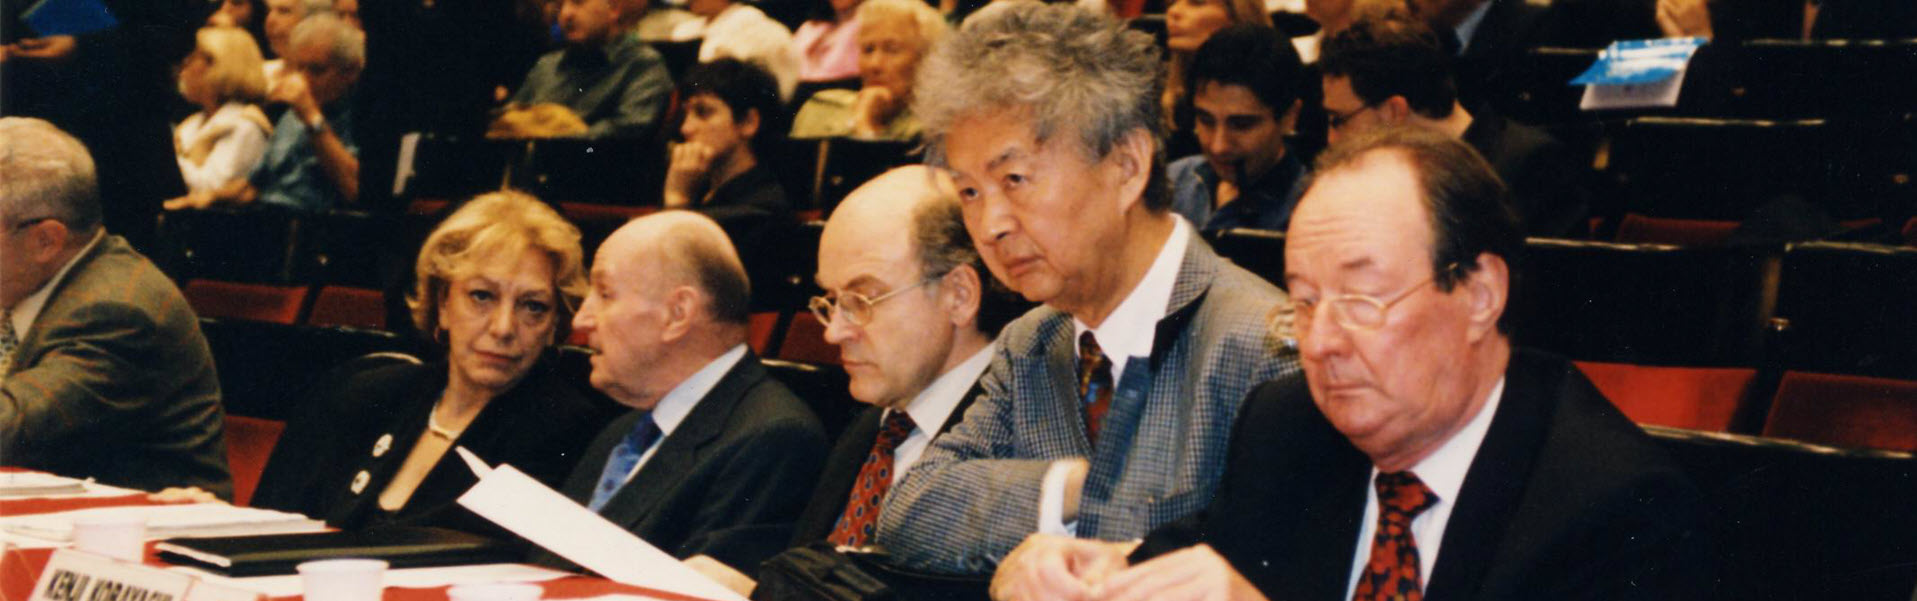 La giuria al lavoro all'edizione del premio del 2001